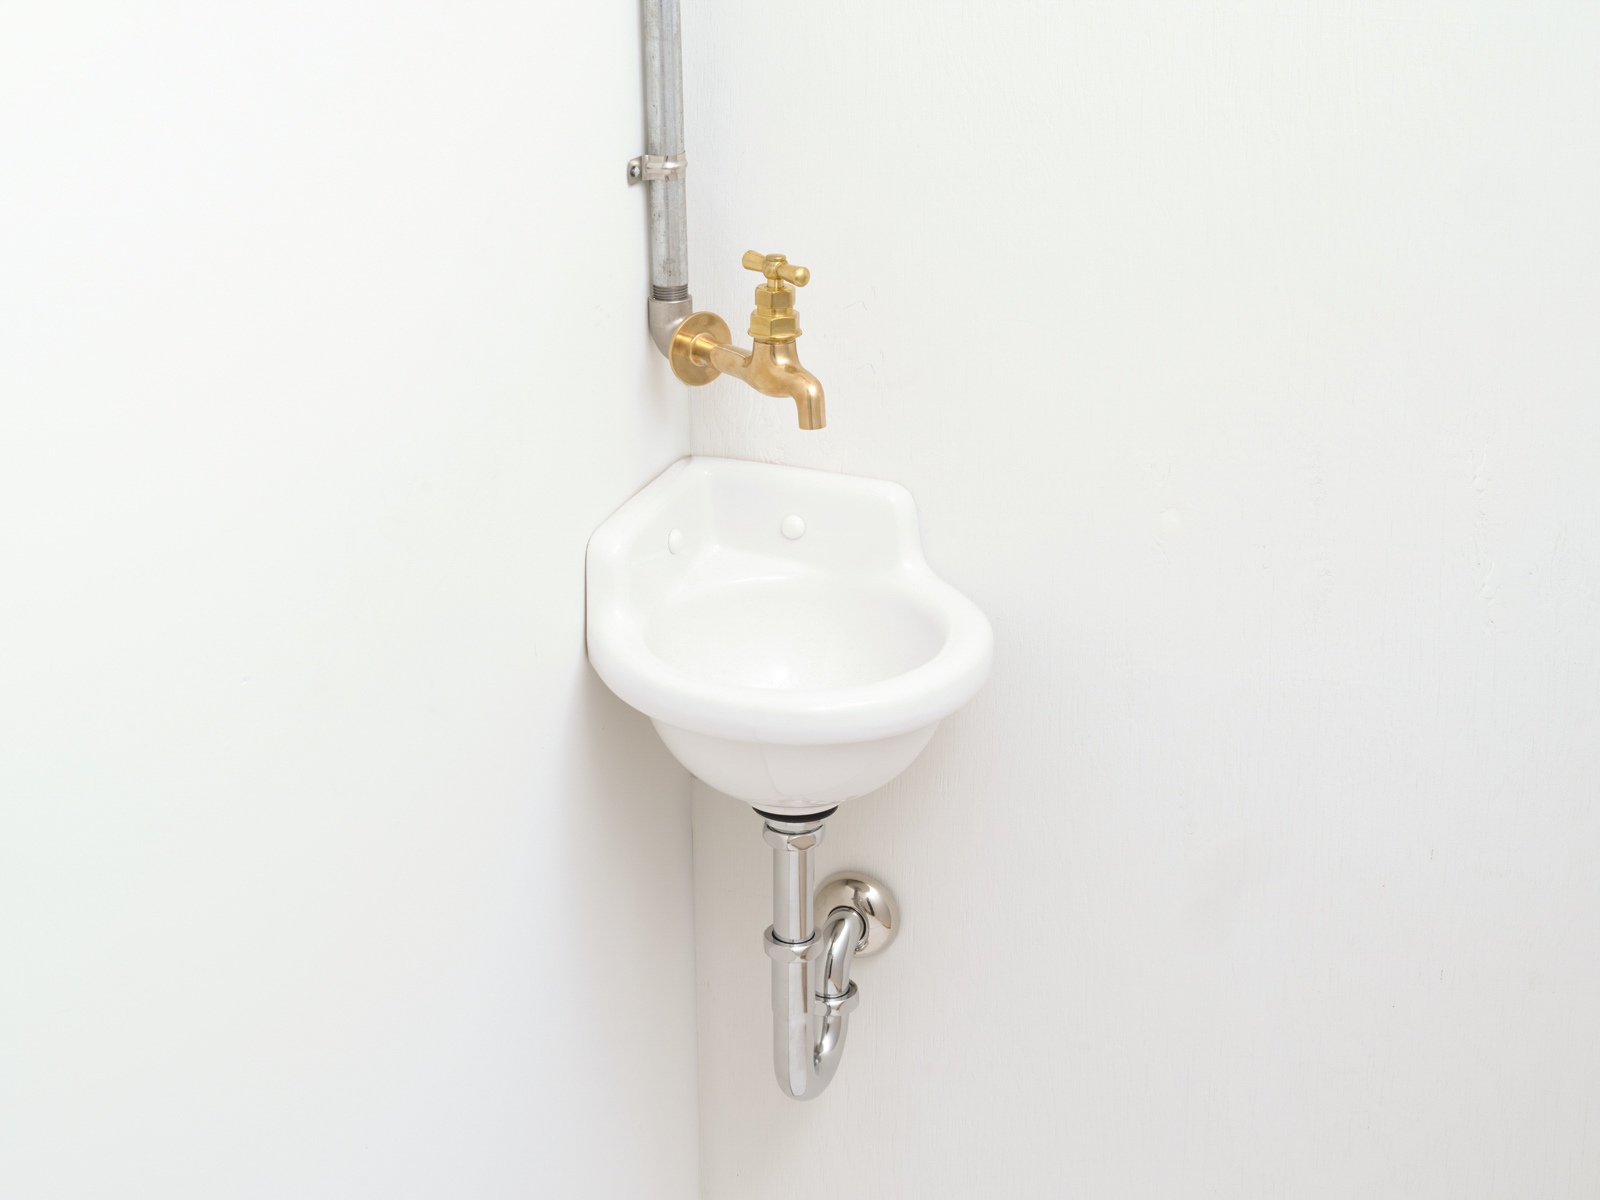 洗面水栓 WT-1：壁付け真鍮ハンドル単水栓 KB-PT011-12-G141 コーナータイプ＋壁付け真鍮ハンドル単水栓（給水管をあえて露出にするとレトロな雰囲気に）※写真の水栓は旧仕様品